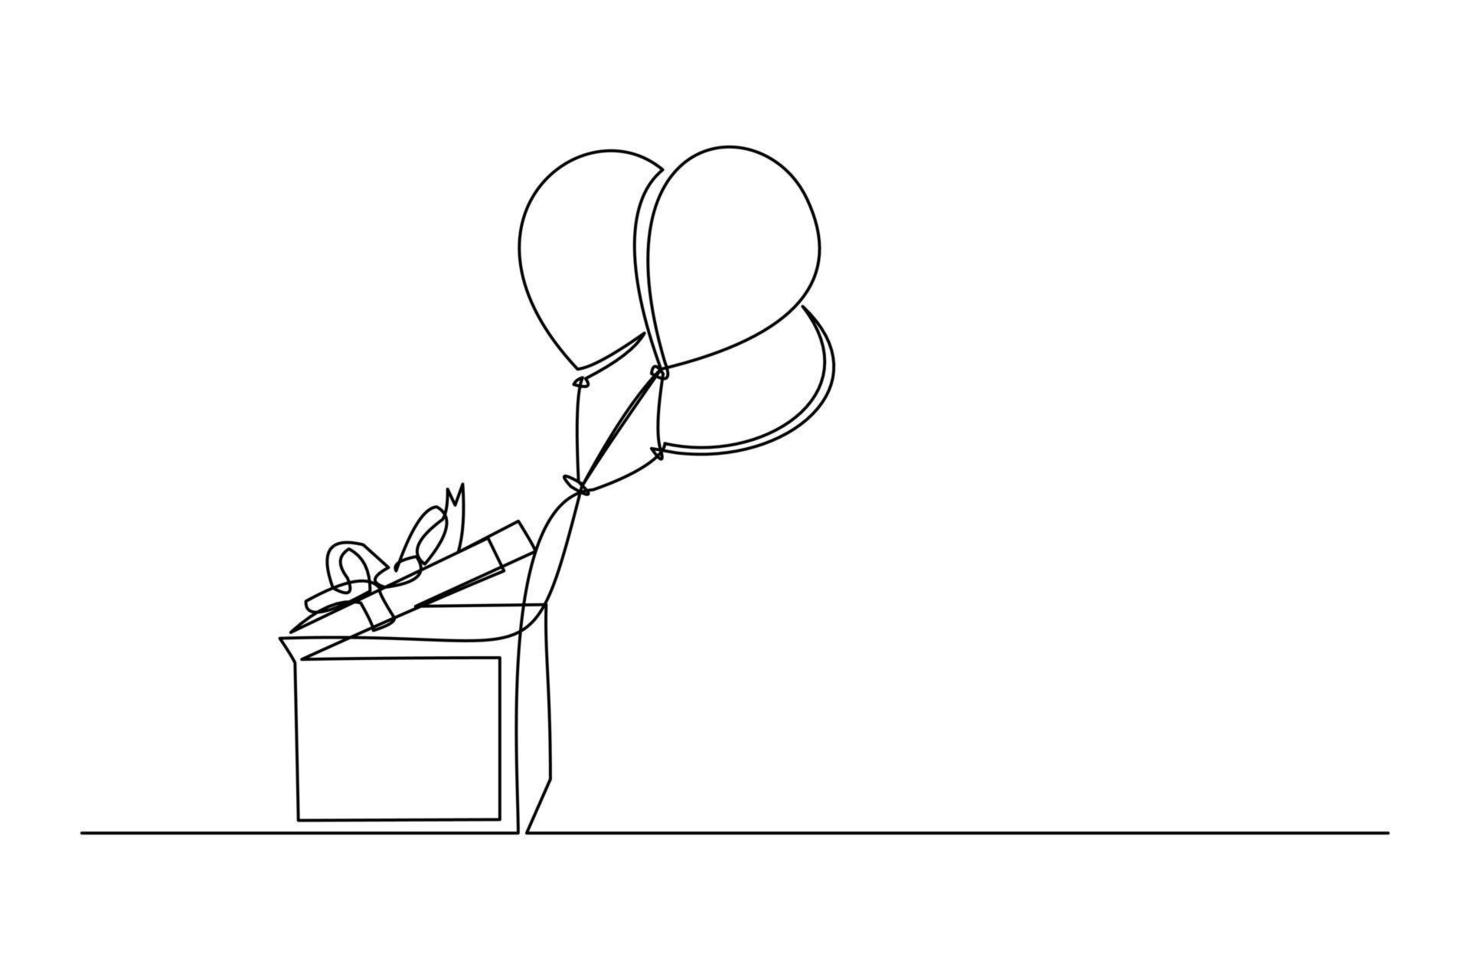 doorlopende lijntekening van de ballon van de verjaardagsviering komt uit de doos. enkele een lijn kunst van decoratie ballon concept ontwerp overzicht. vector illustratie